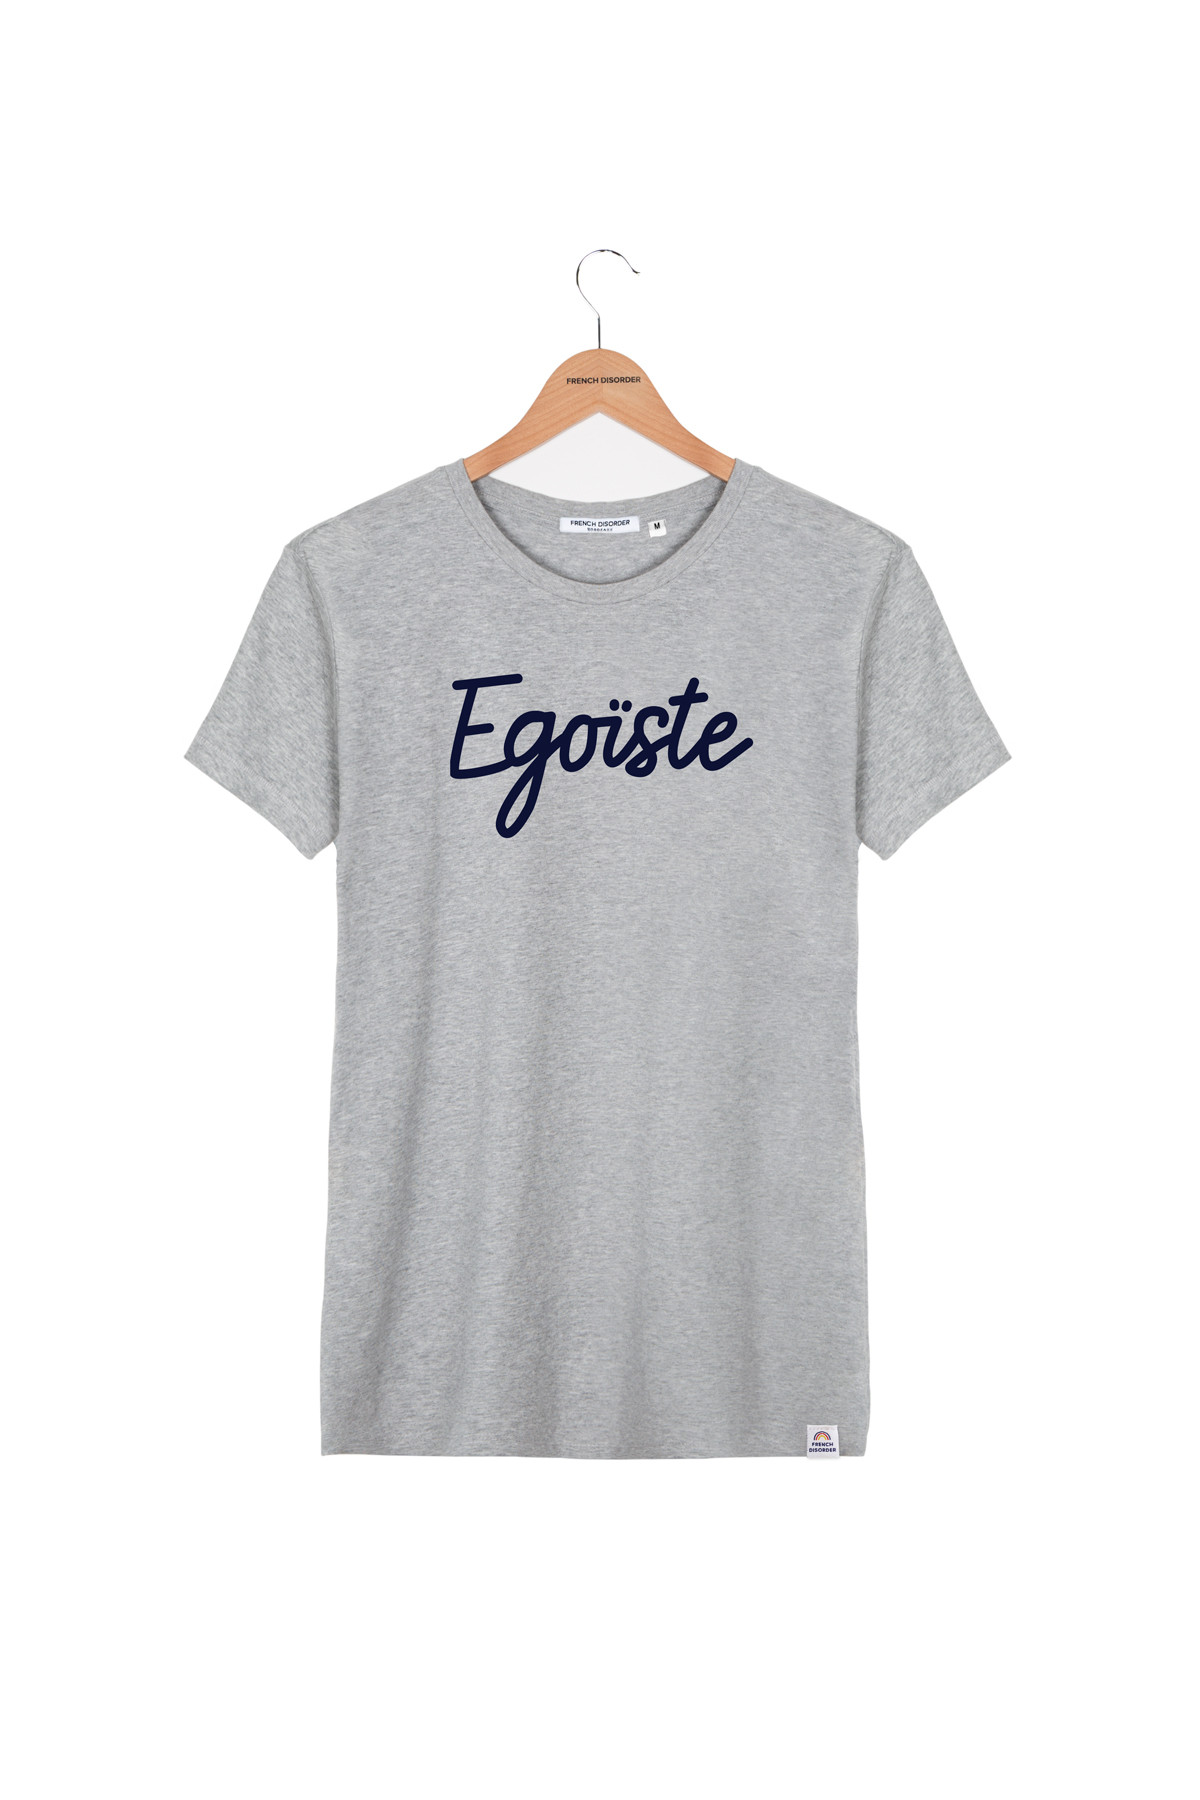 Tshirt EGOISTE French Disorder